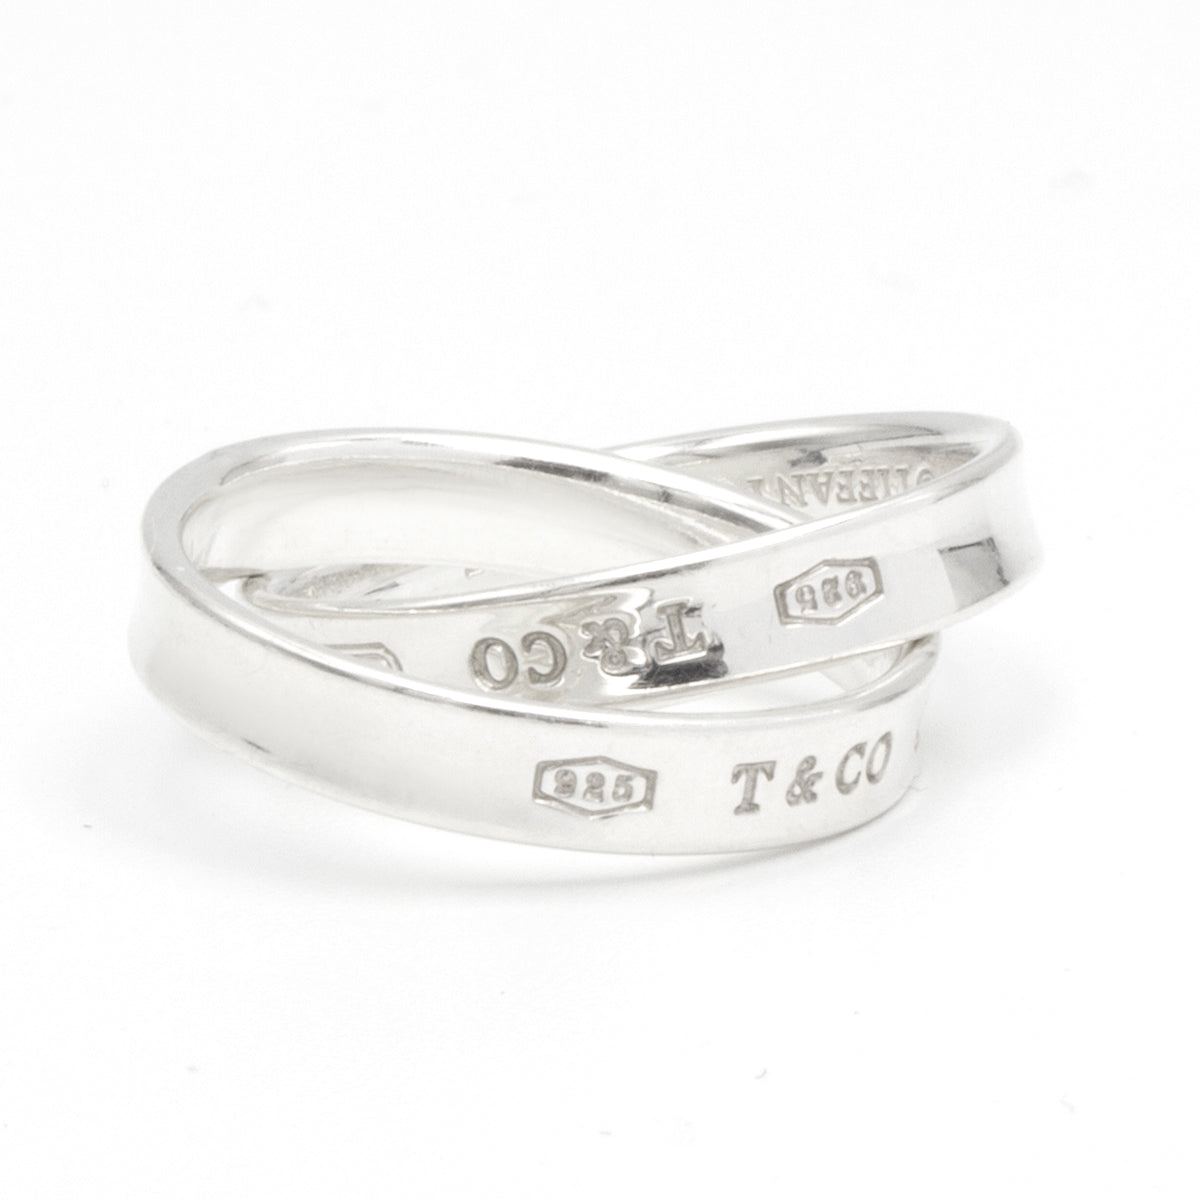 Tiffany & Co 1837 ring